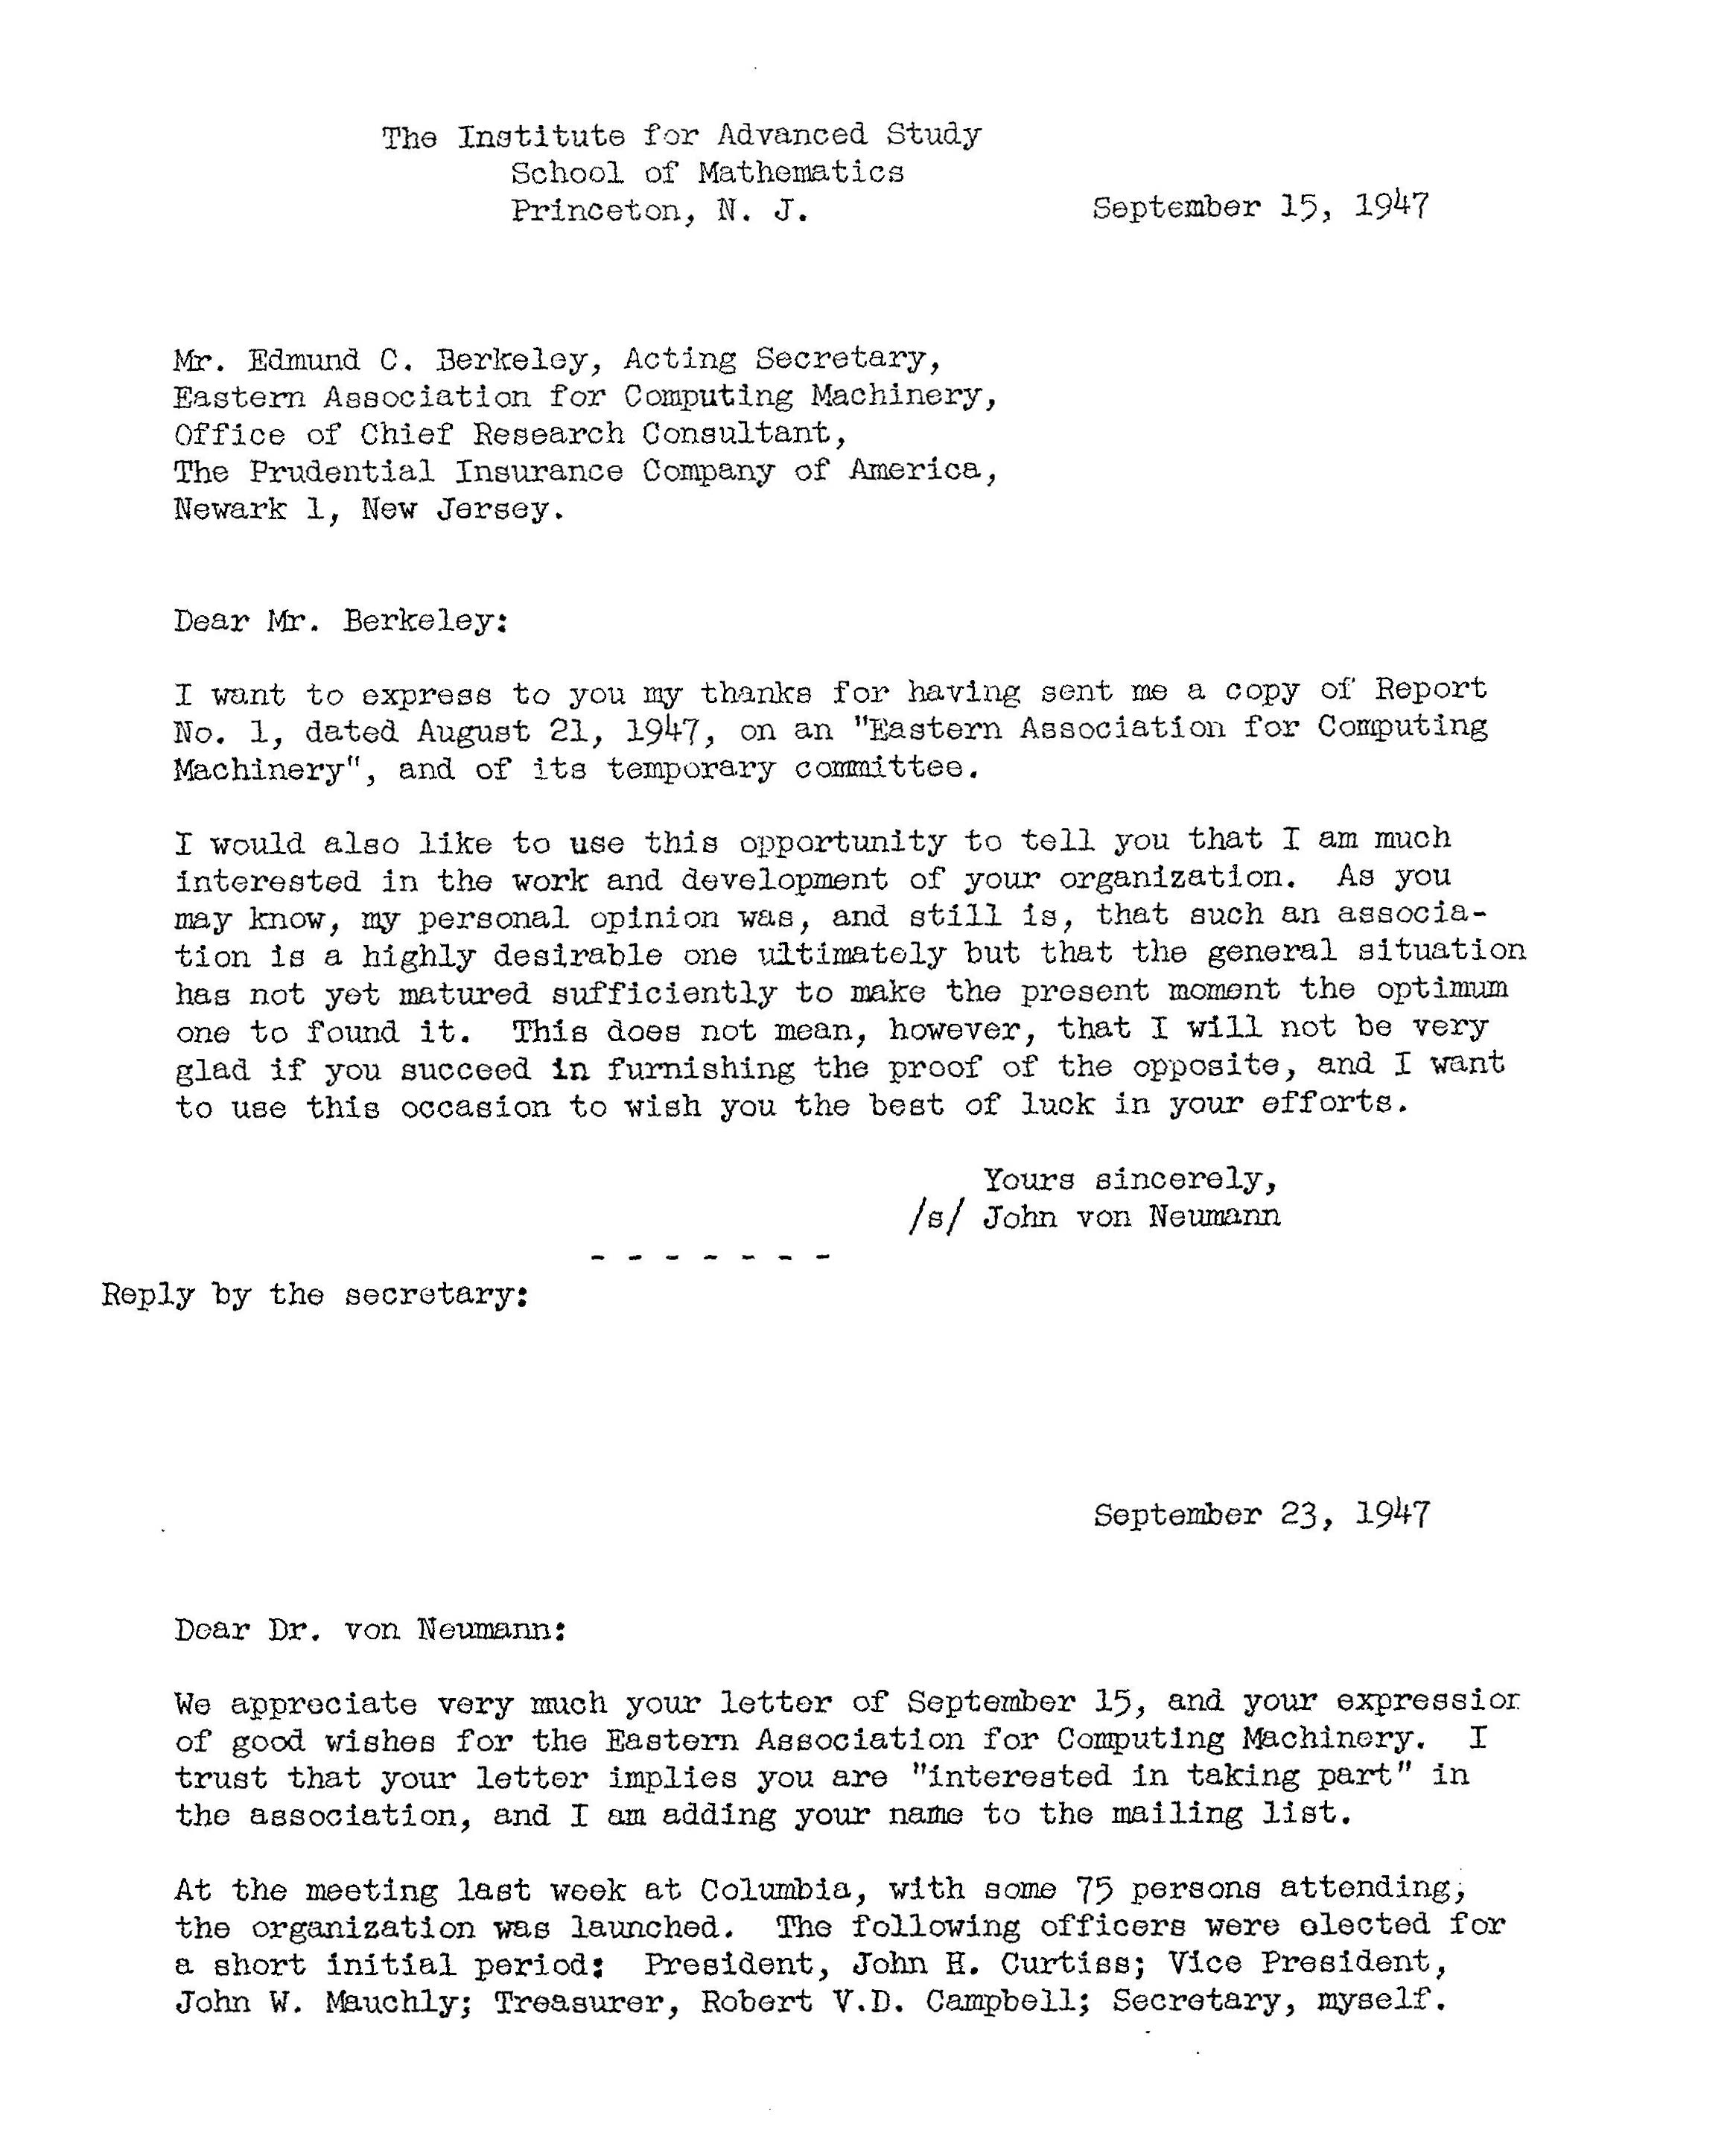 John von Neumann letter